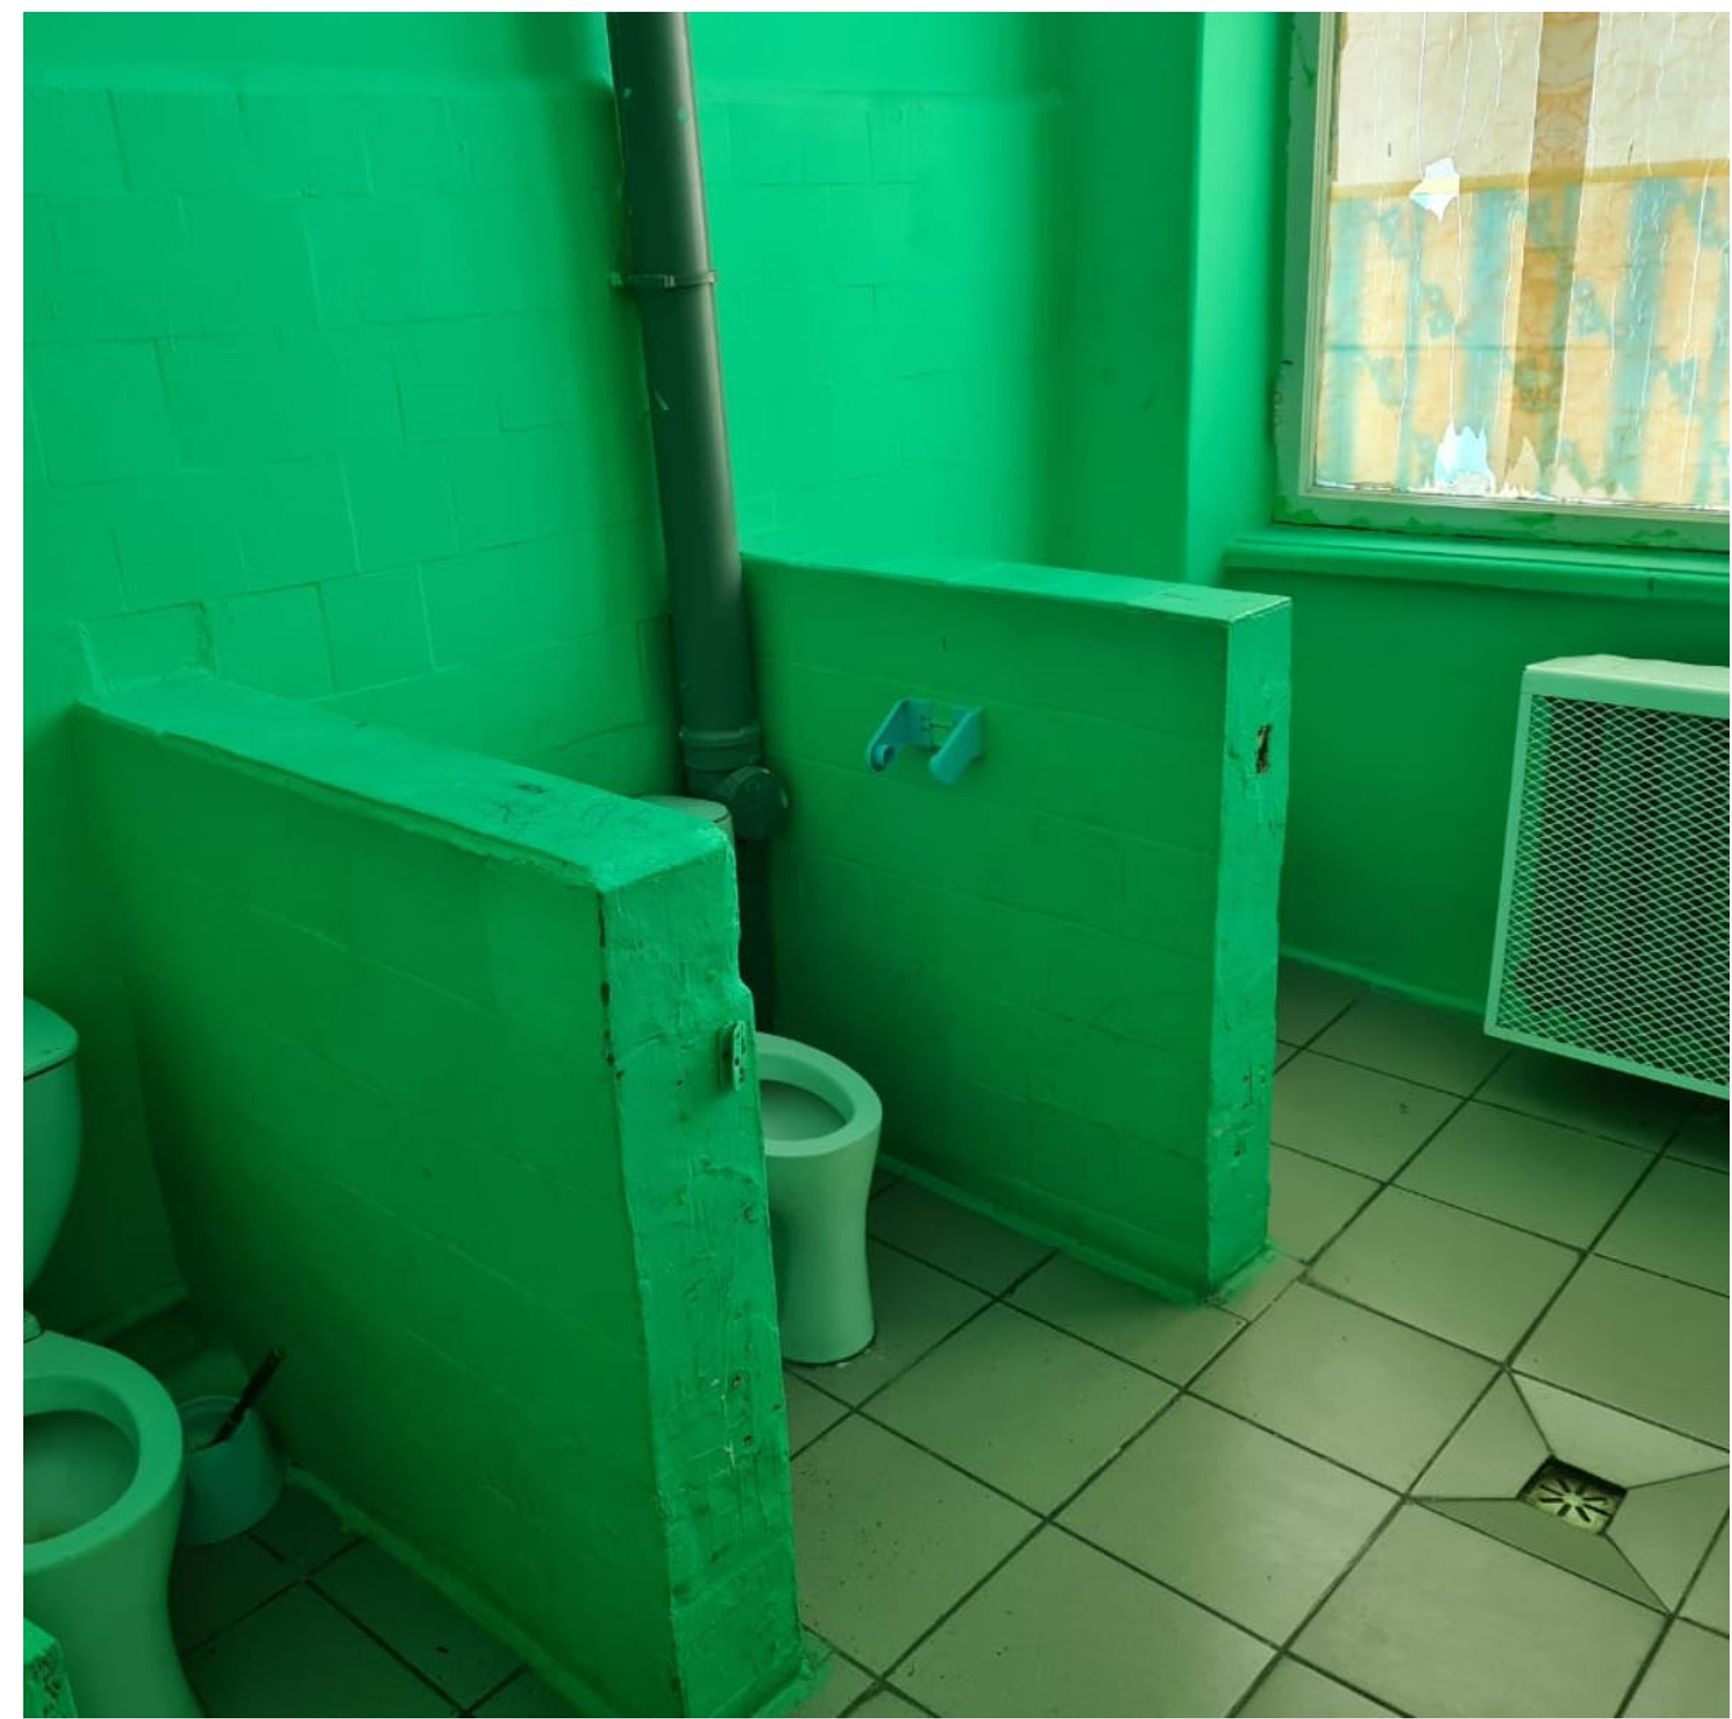 «Туалет як з фільму жахів, діти обходять стороною». Російські школярі показали санвузли в своїх школах в рамках конкурсу Domestos